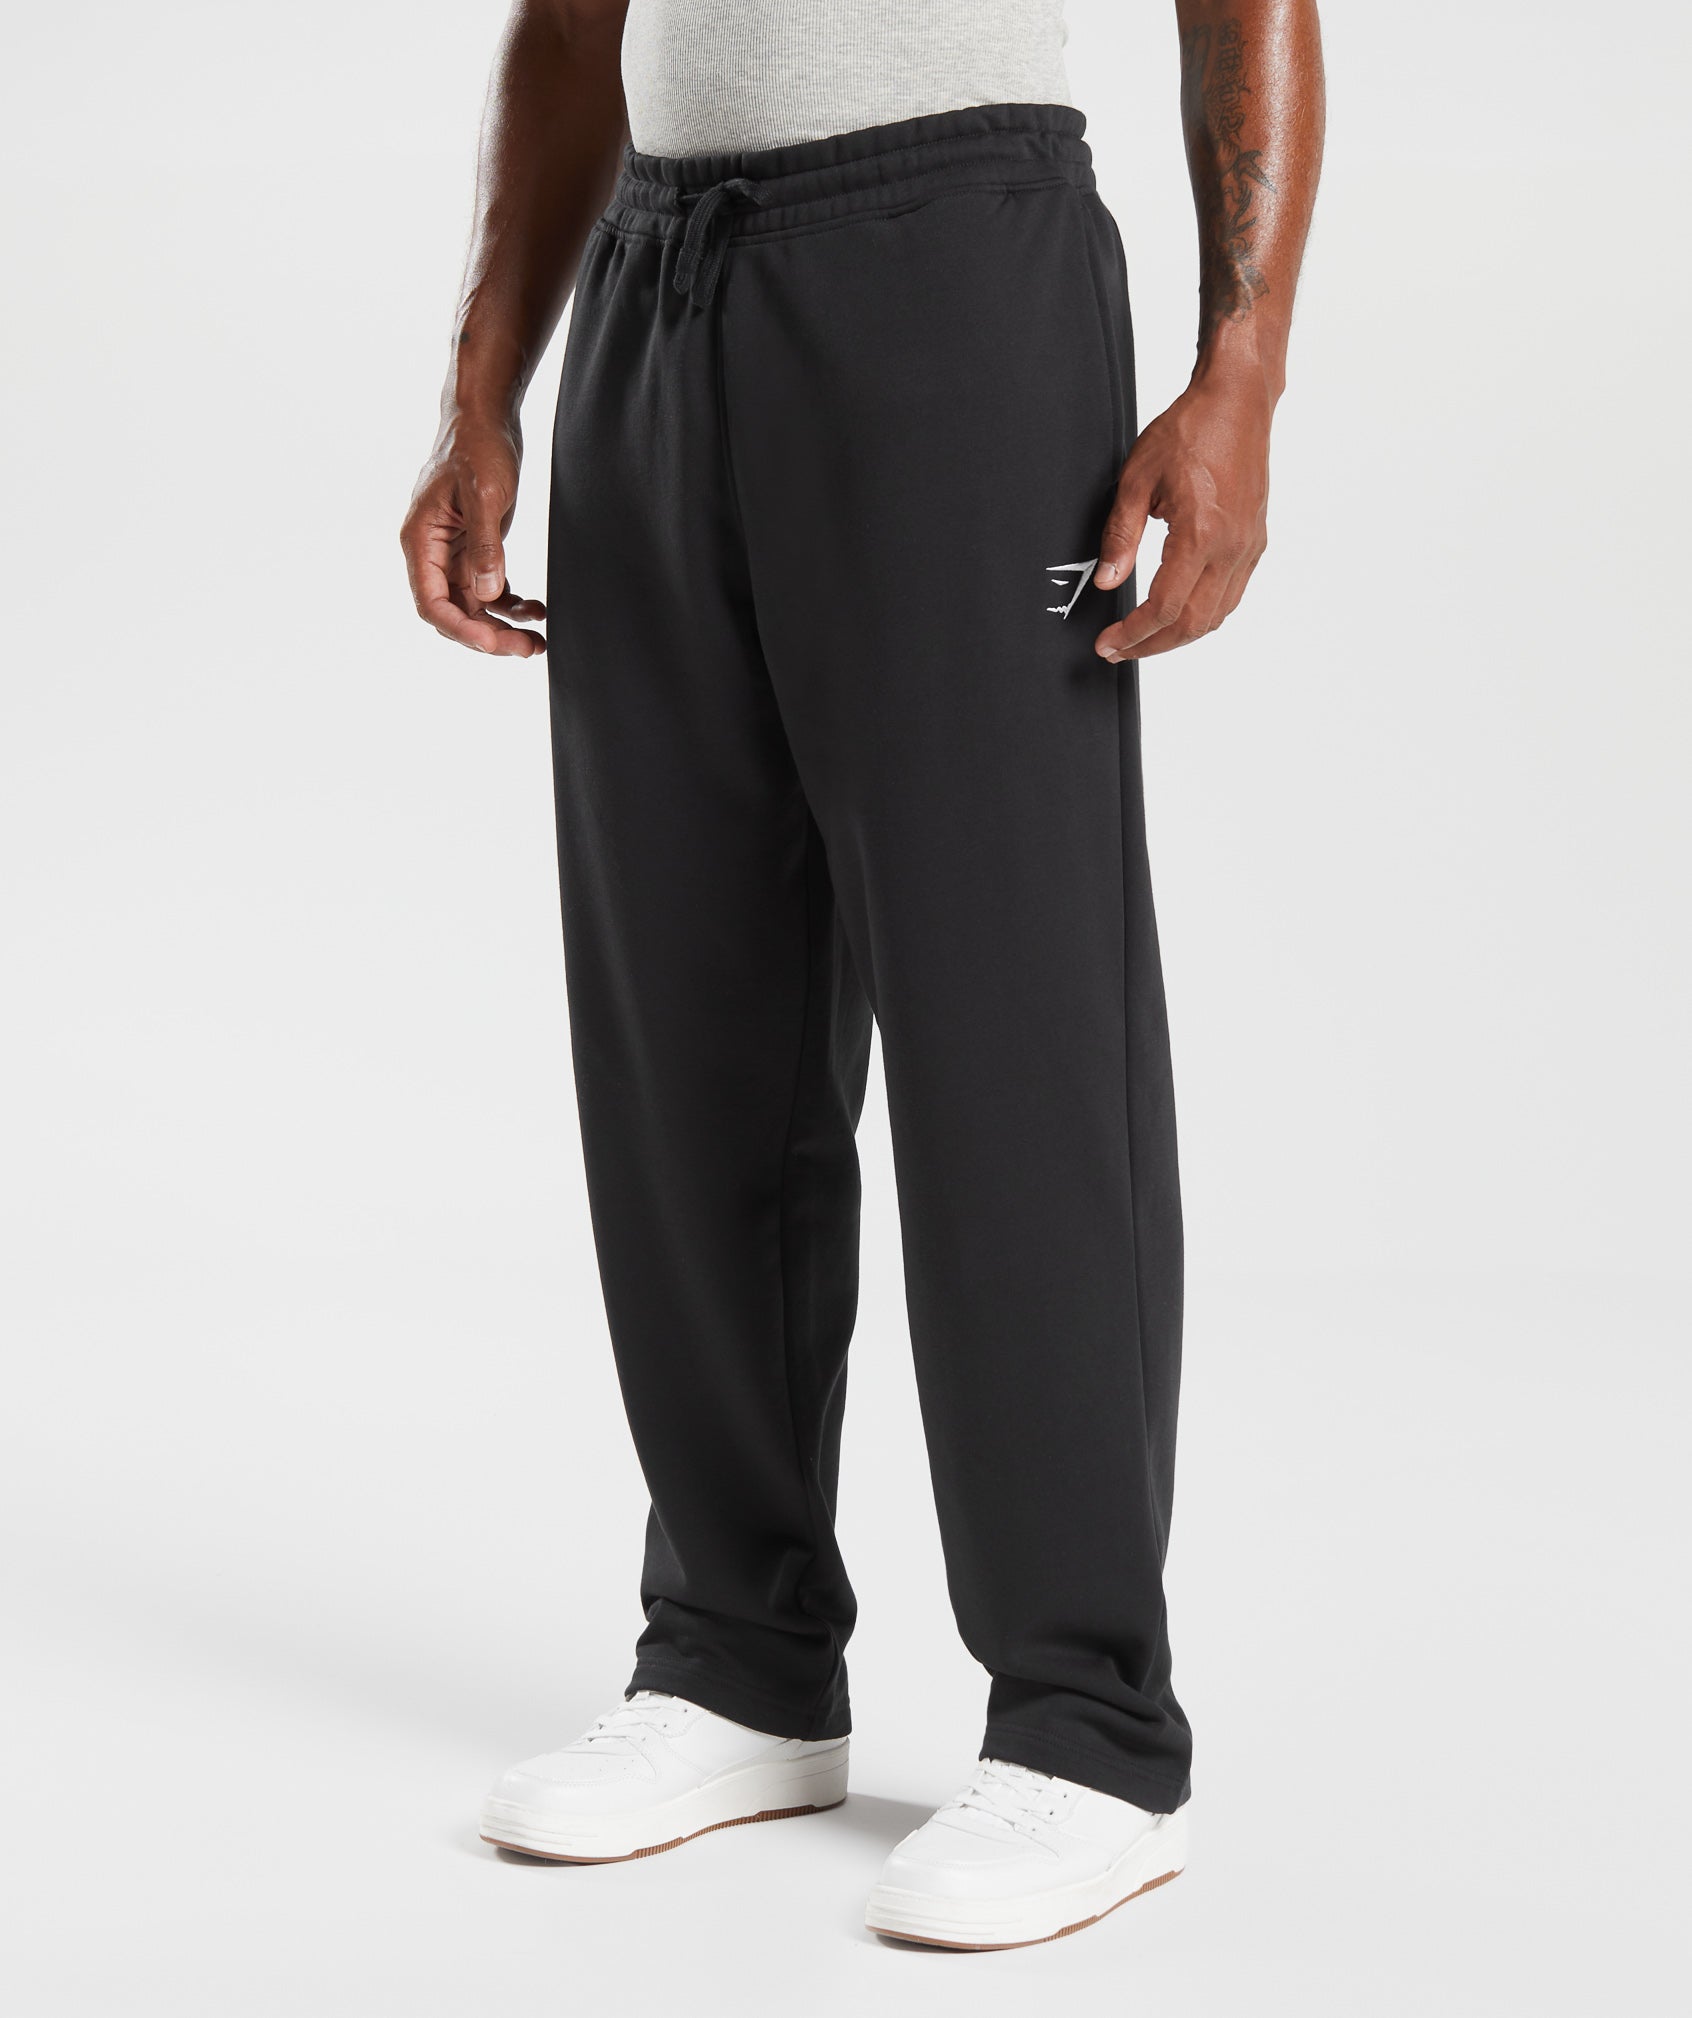 Gymshark Joggers Navy Blue Drawstring Pocket Sweatpants Men's Medium  Running